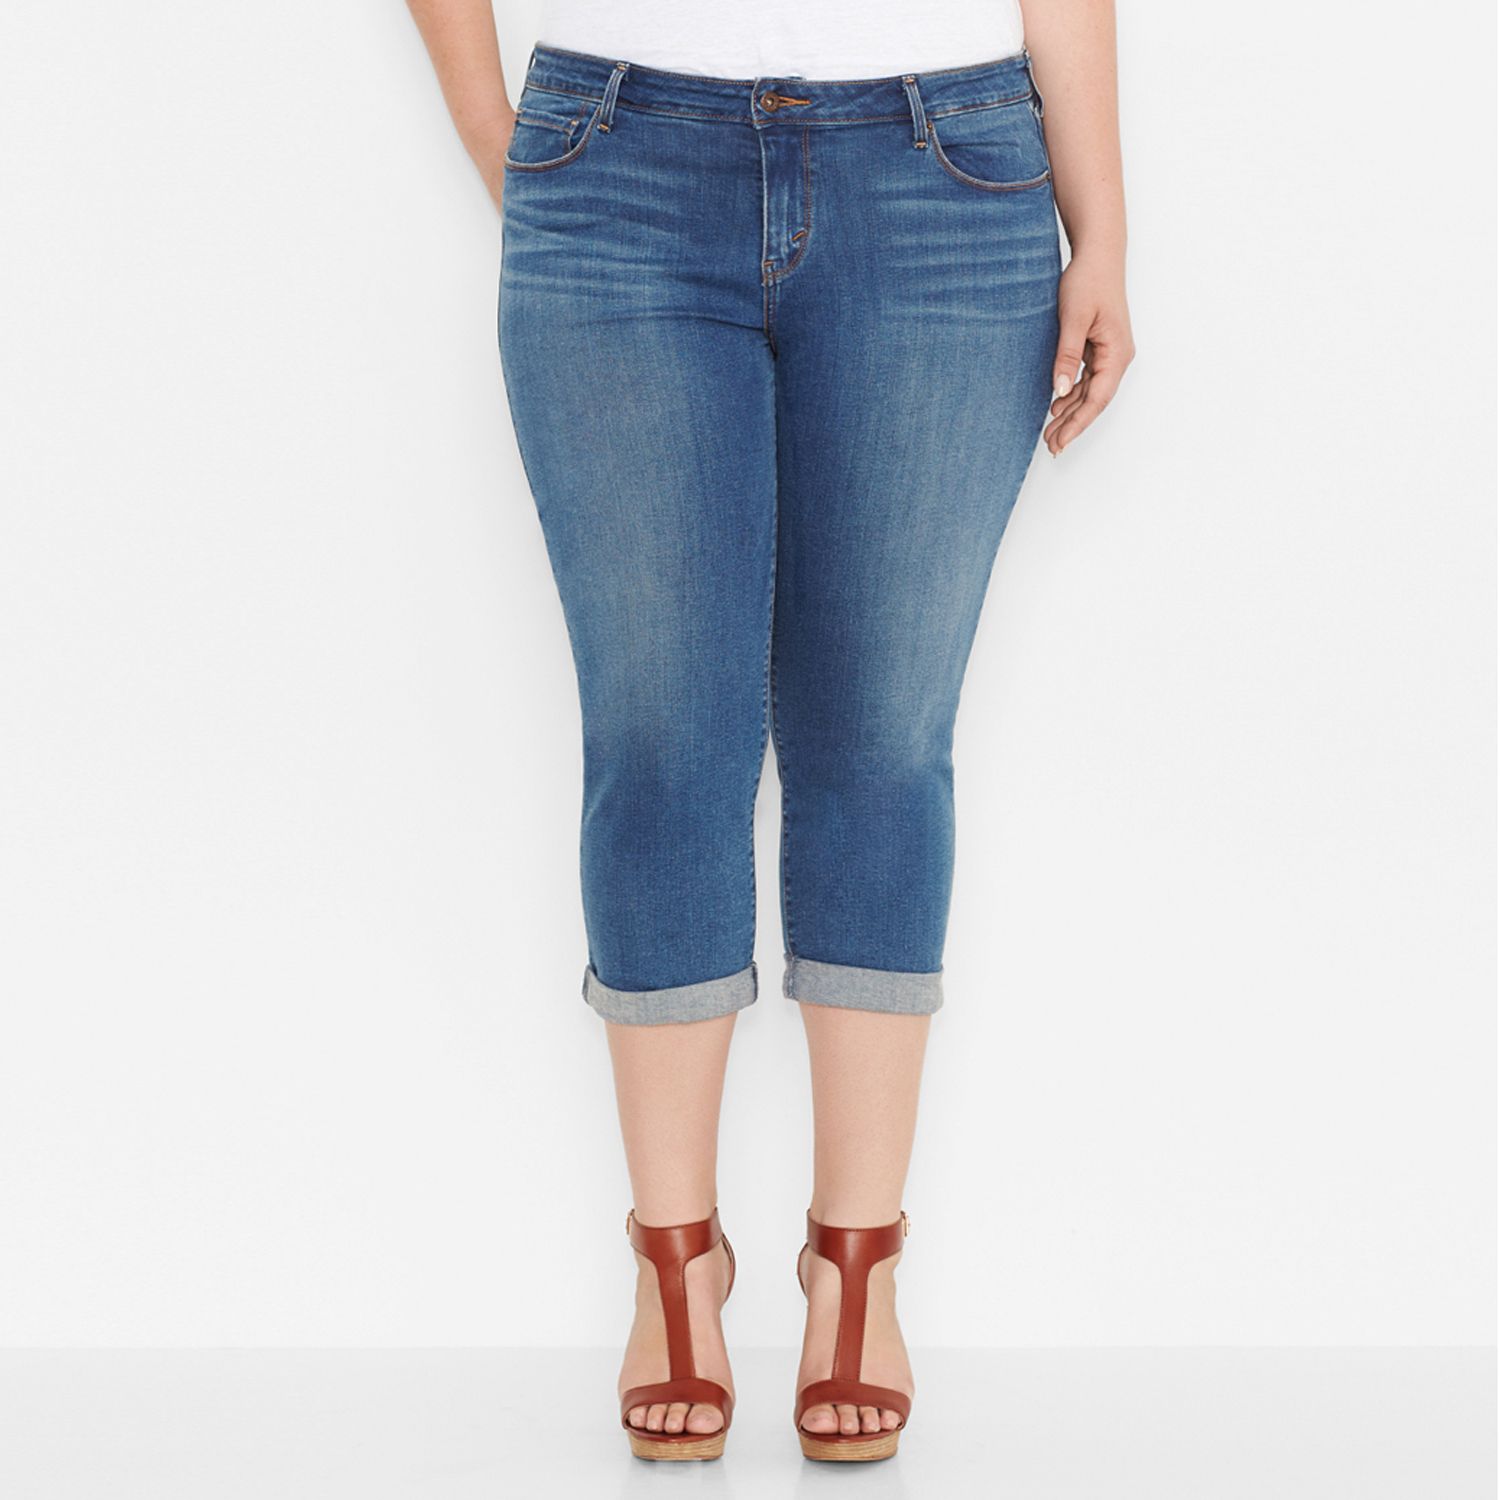 capri jeans levis